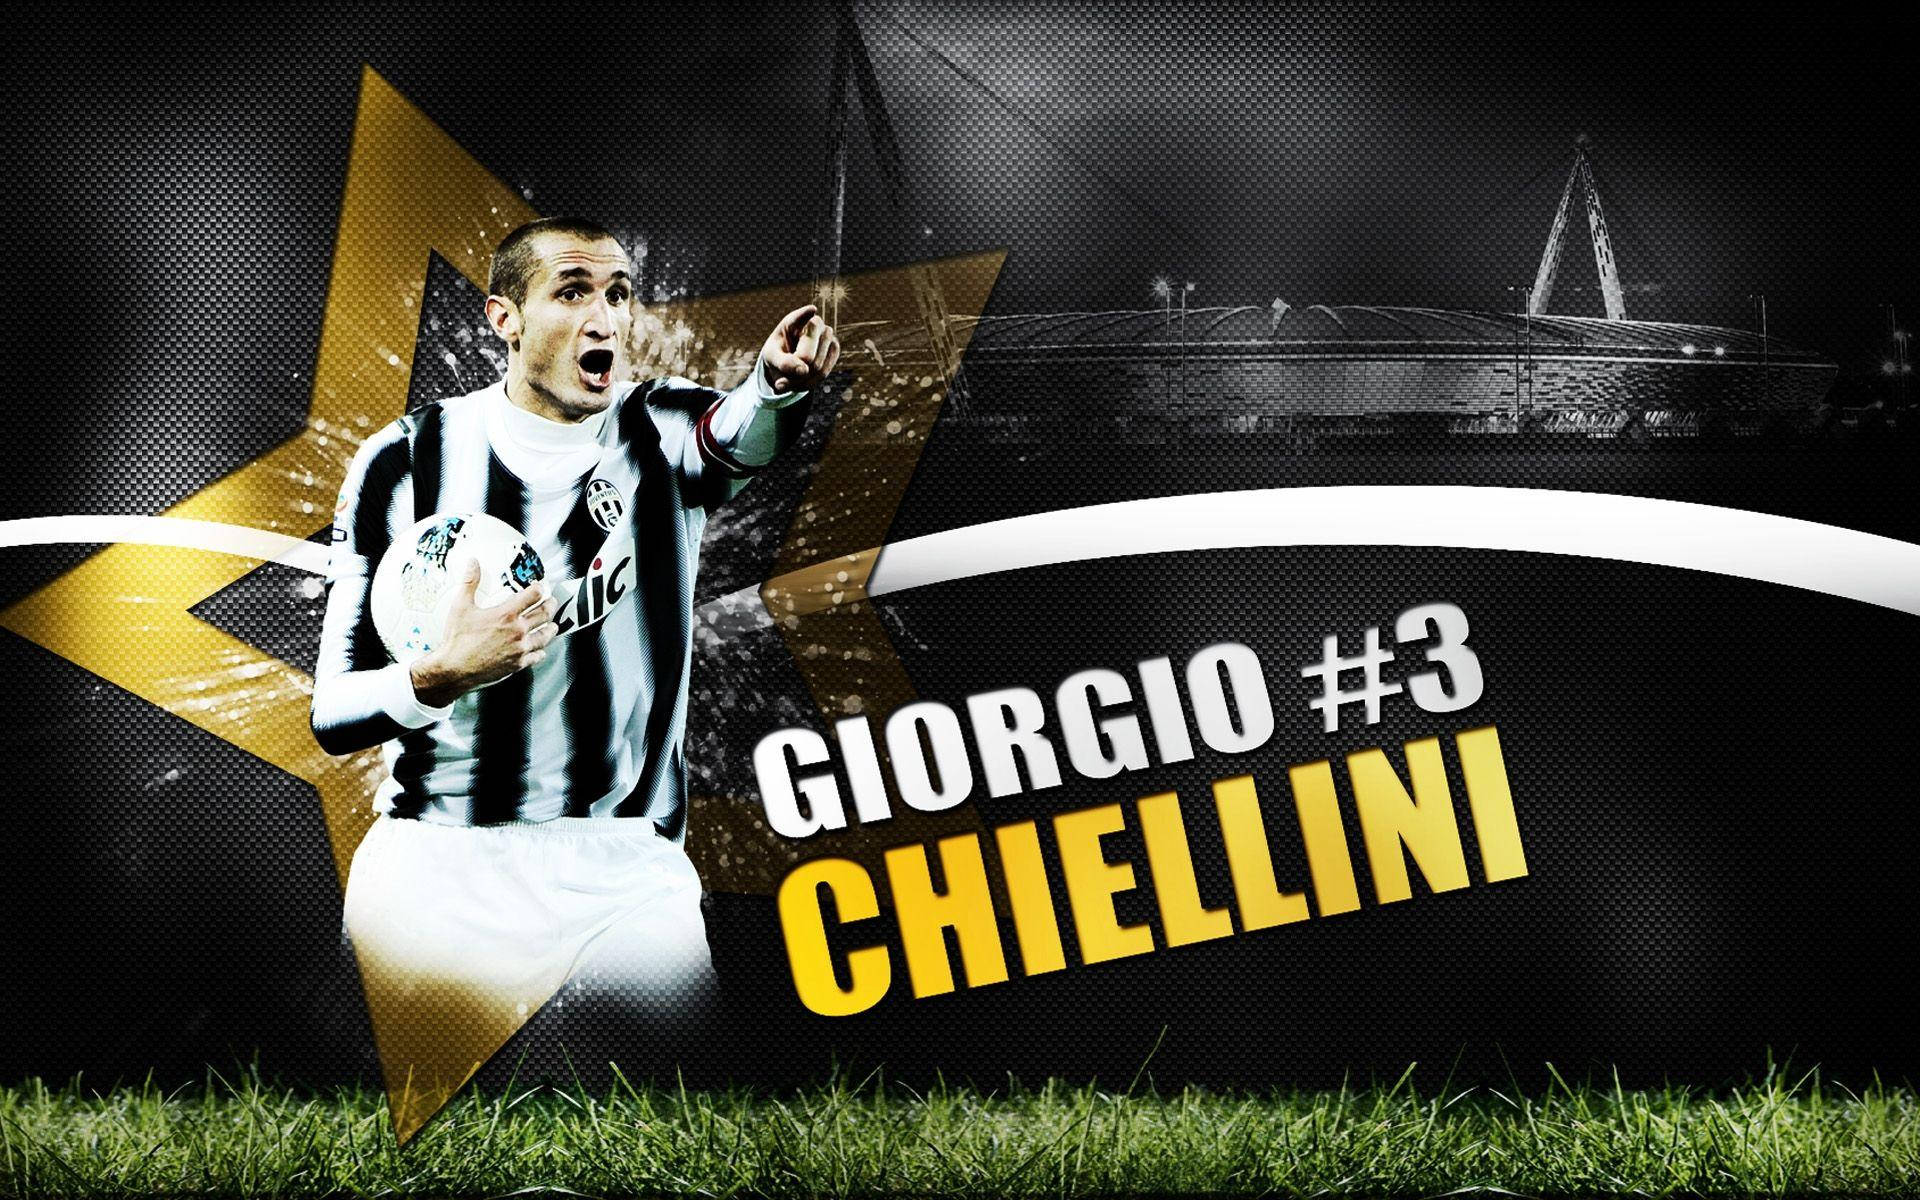 Giorgio Chiellini Football Player Digital Poster Art Wallpaper